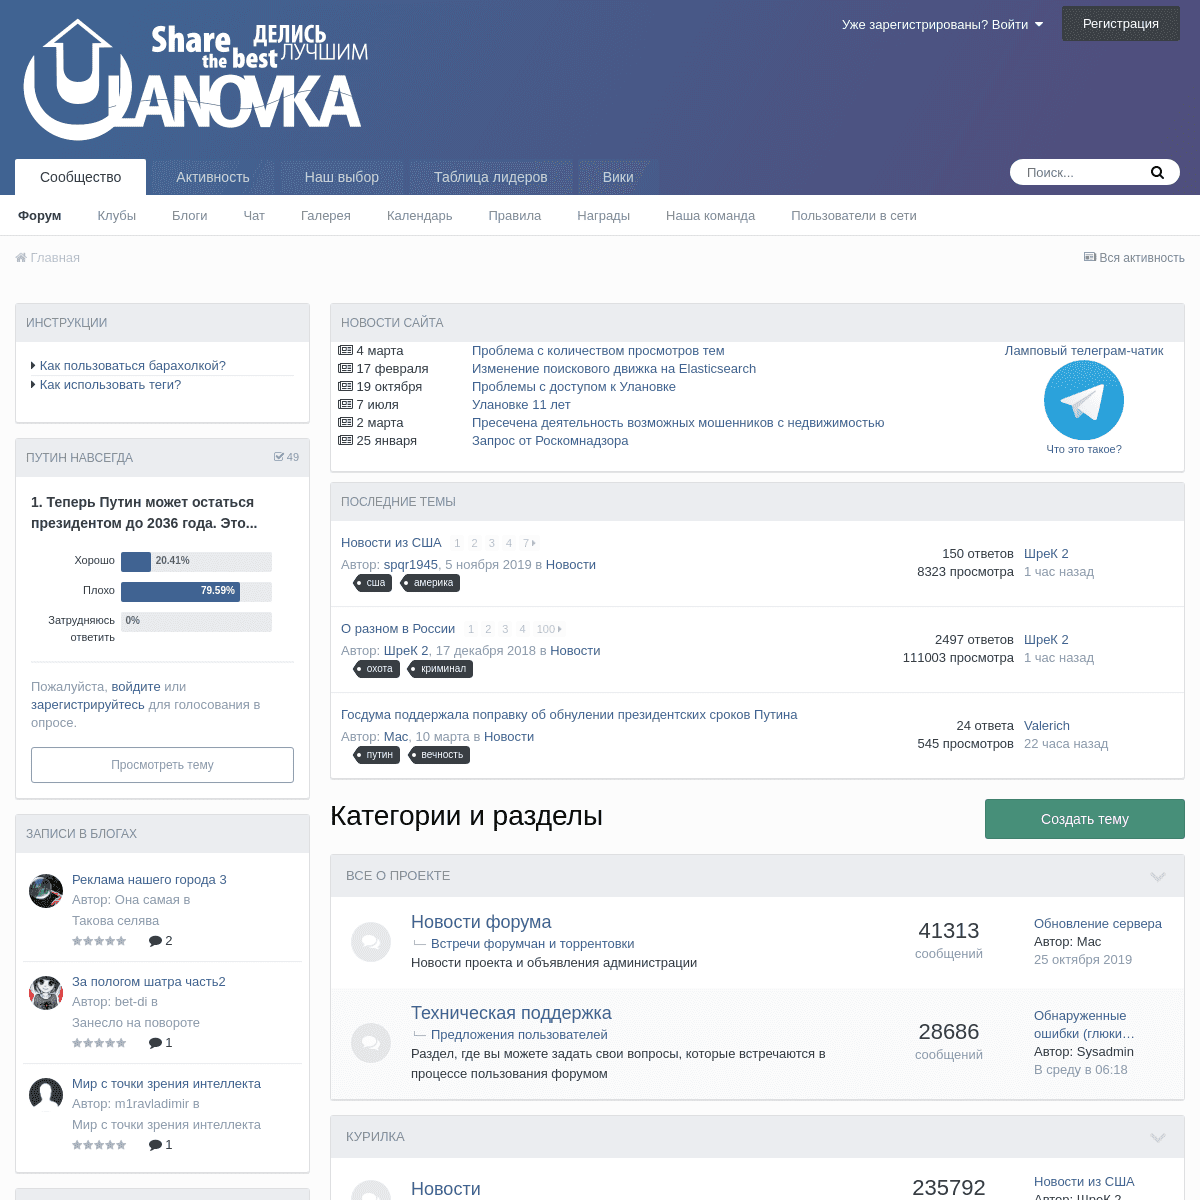 A complete backup of ulanovka.ru